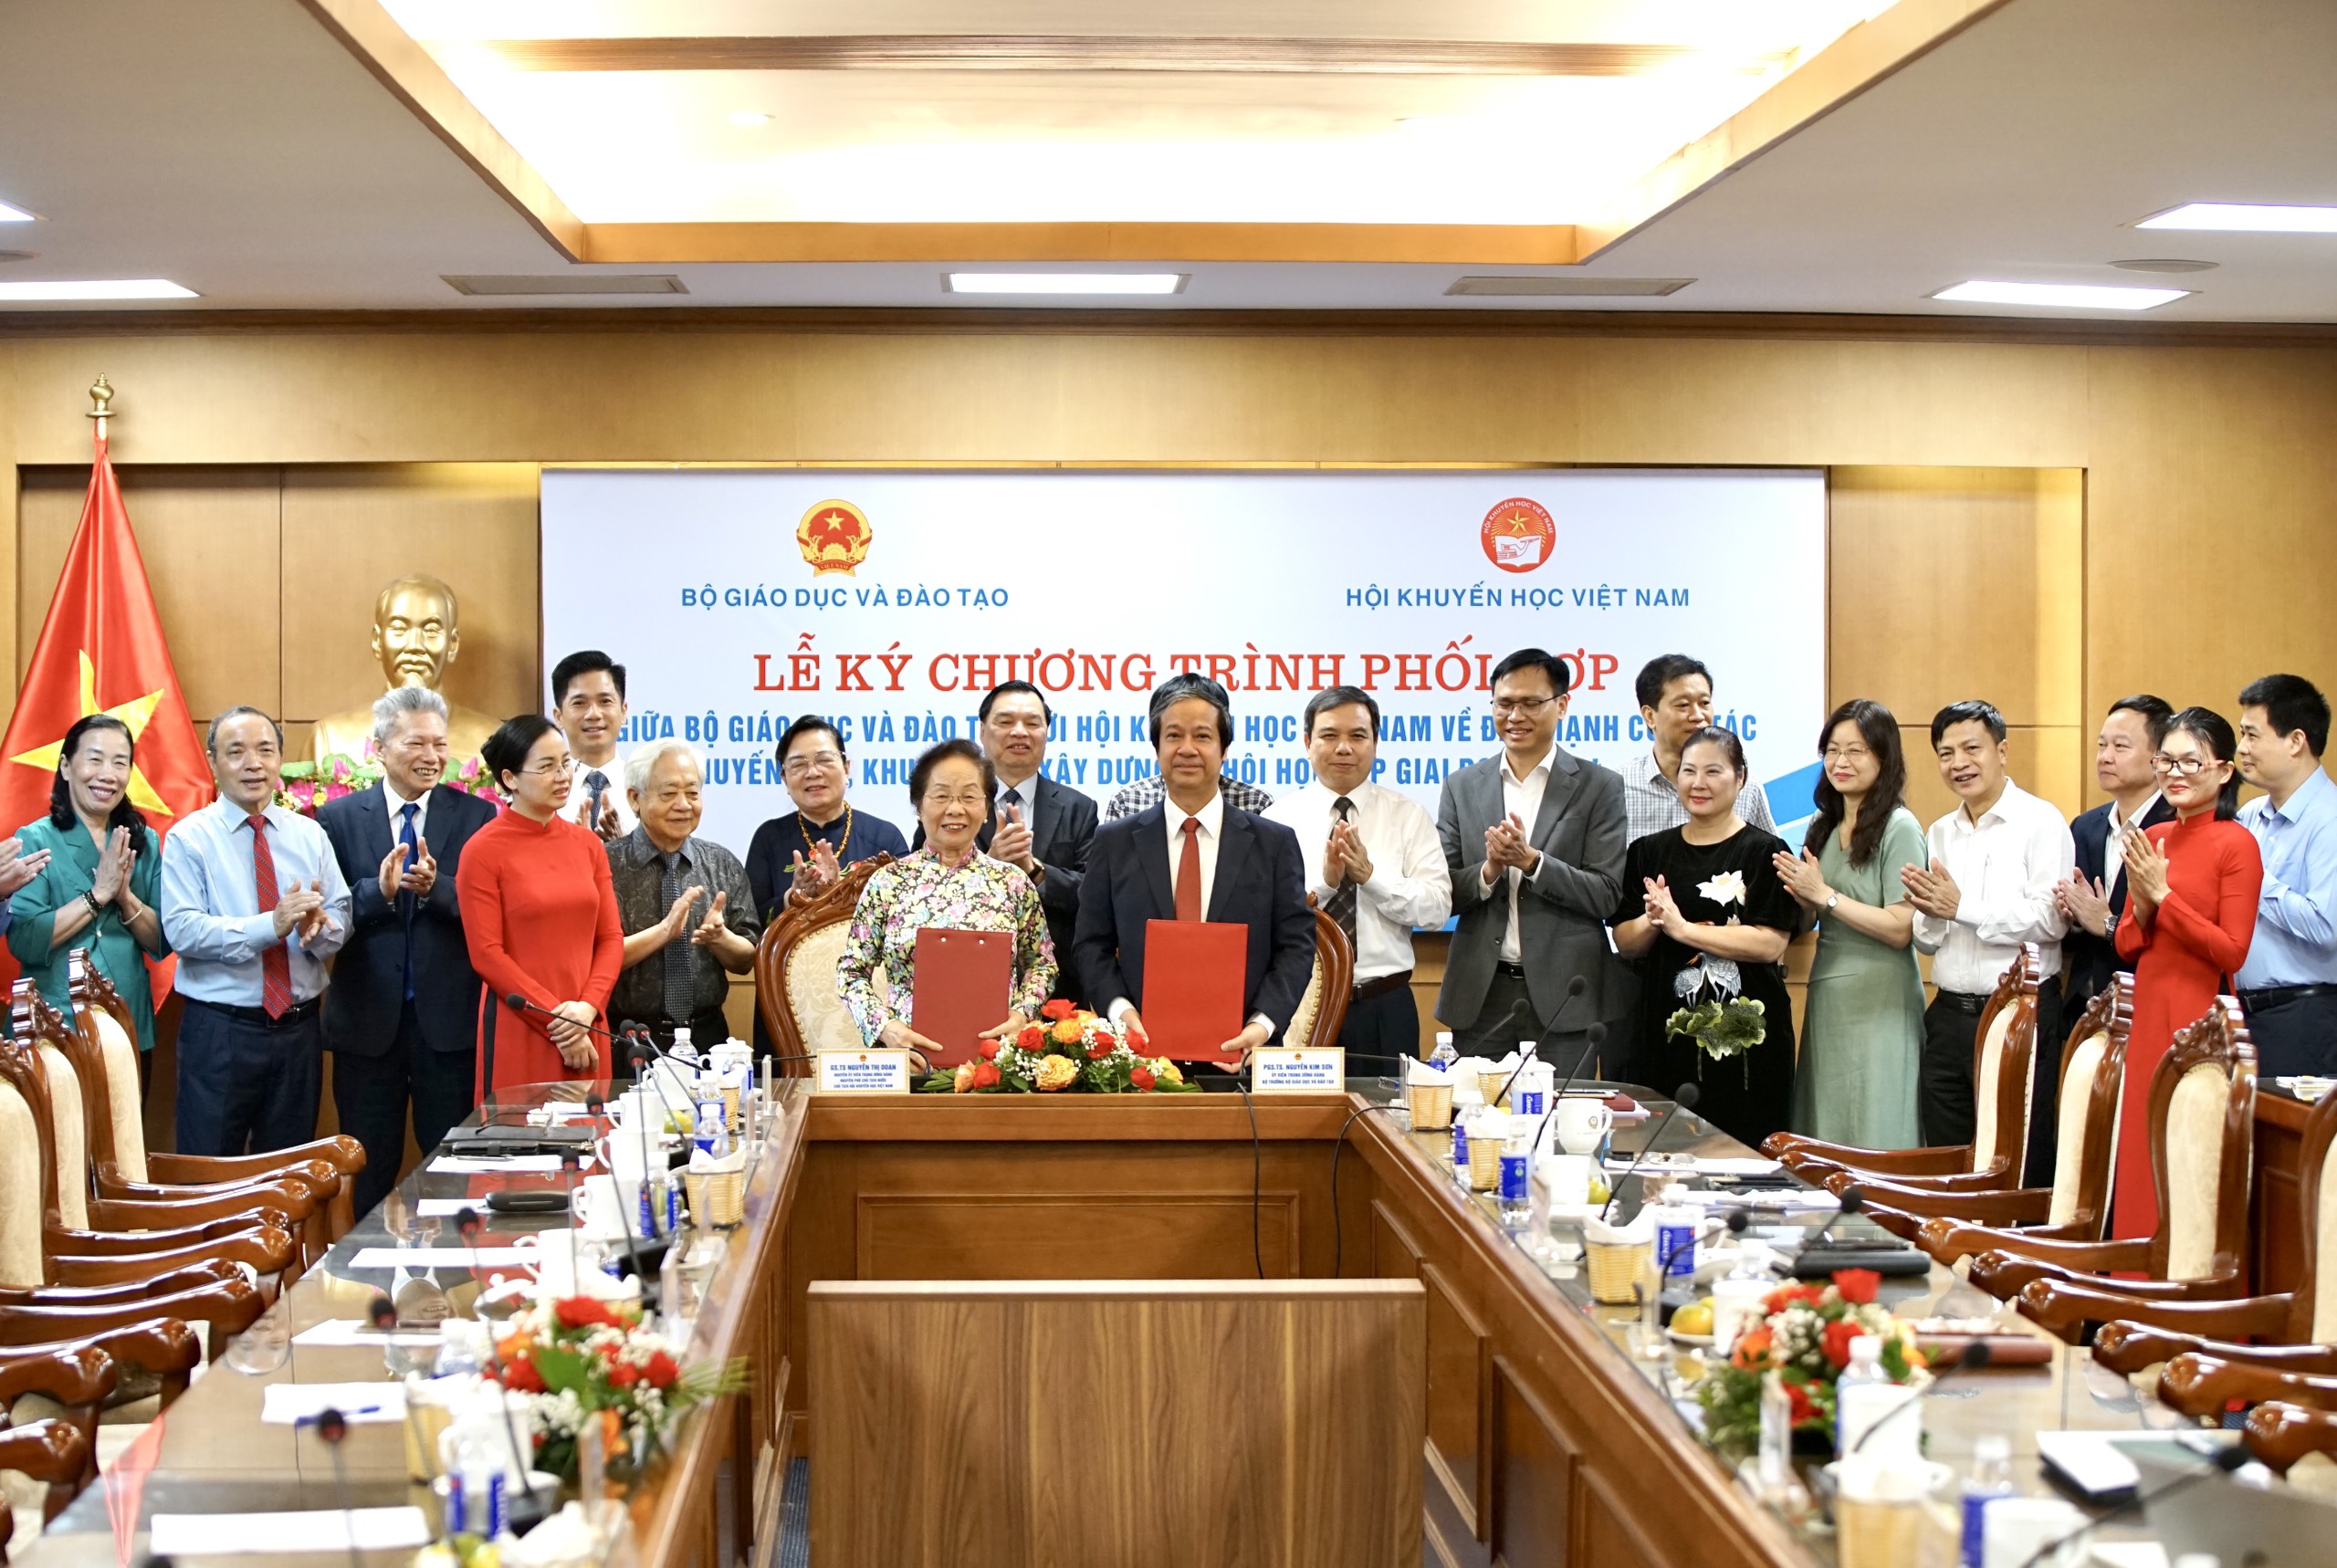 Chủ tịch Hội Khuyến học Việt Nam Nguyễn Thị Doan và Bộ trưởng Bộ GD&ĐT Nguyễn Kim Sơn thay mặt hai bên ký kết chương trình phối hợp.